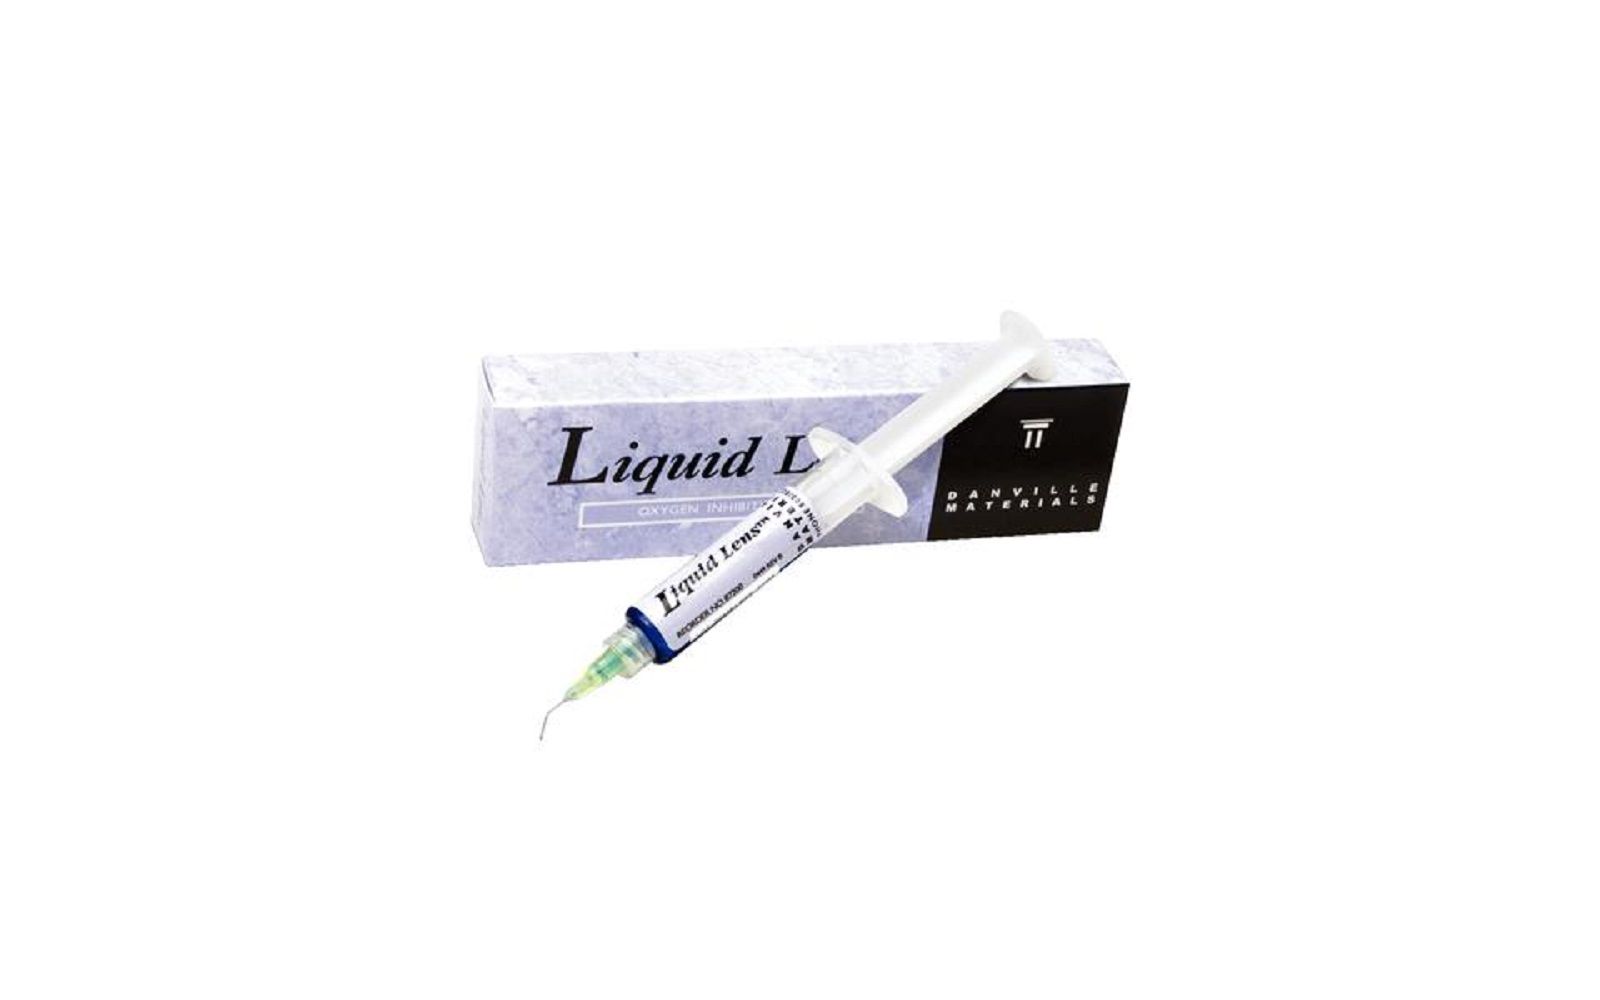 Liquid lens™ oxygen barrier gel – 5 ml syringe, 12 tips